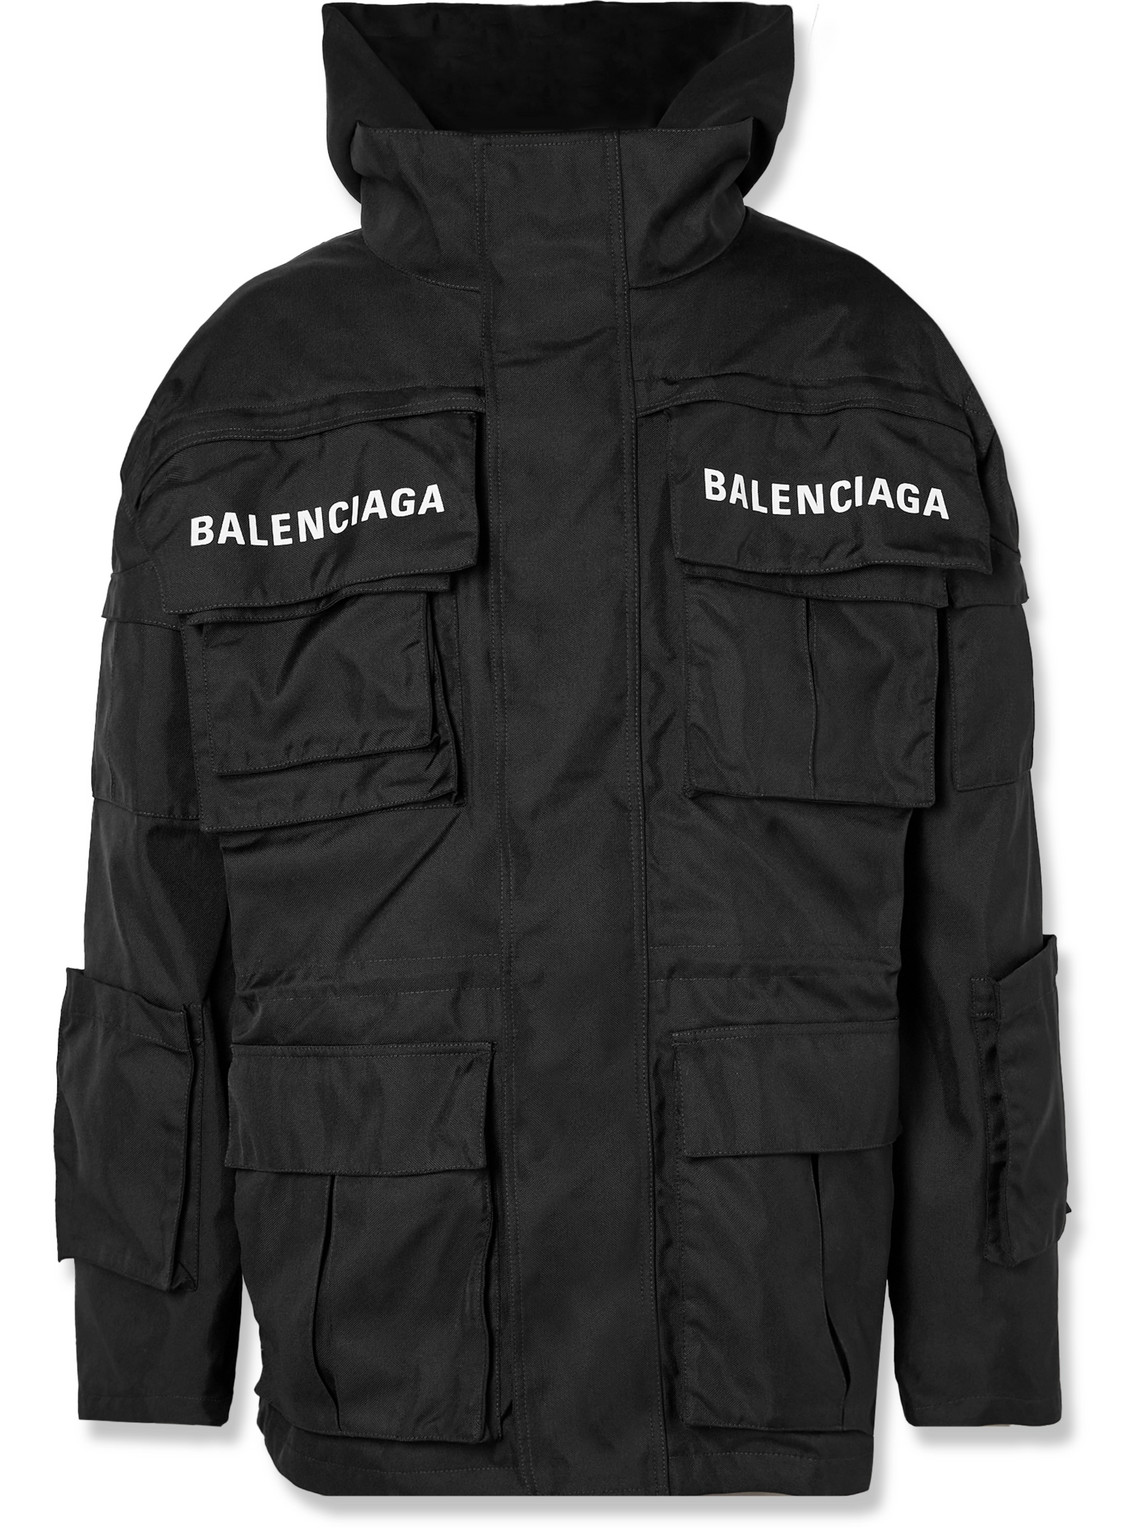 Balenciaga - Logo-Print Shell and Cotton-Twill Hooded Parka - Men - Black - 3 von Balenciaga